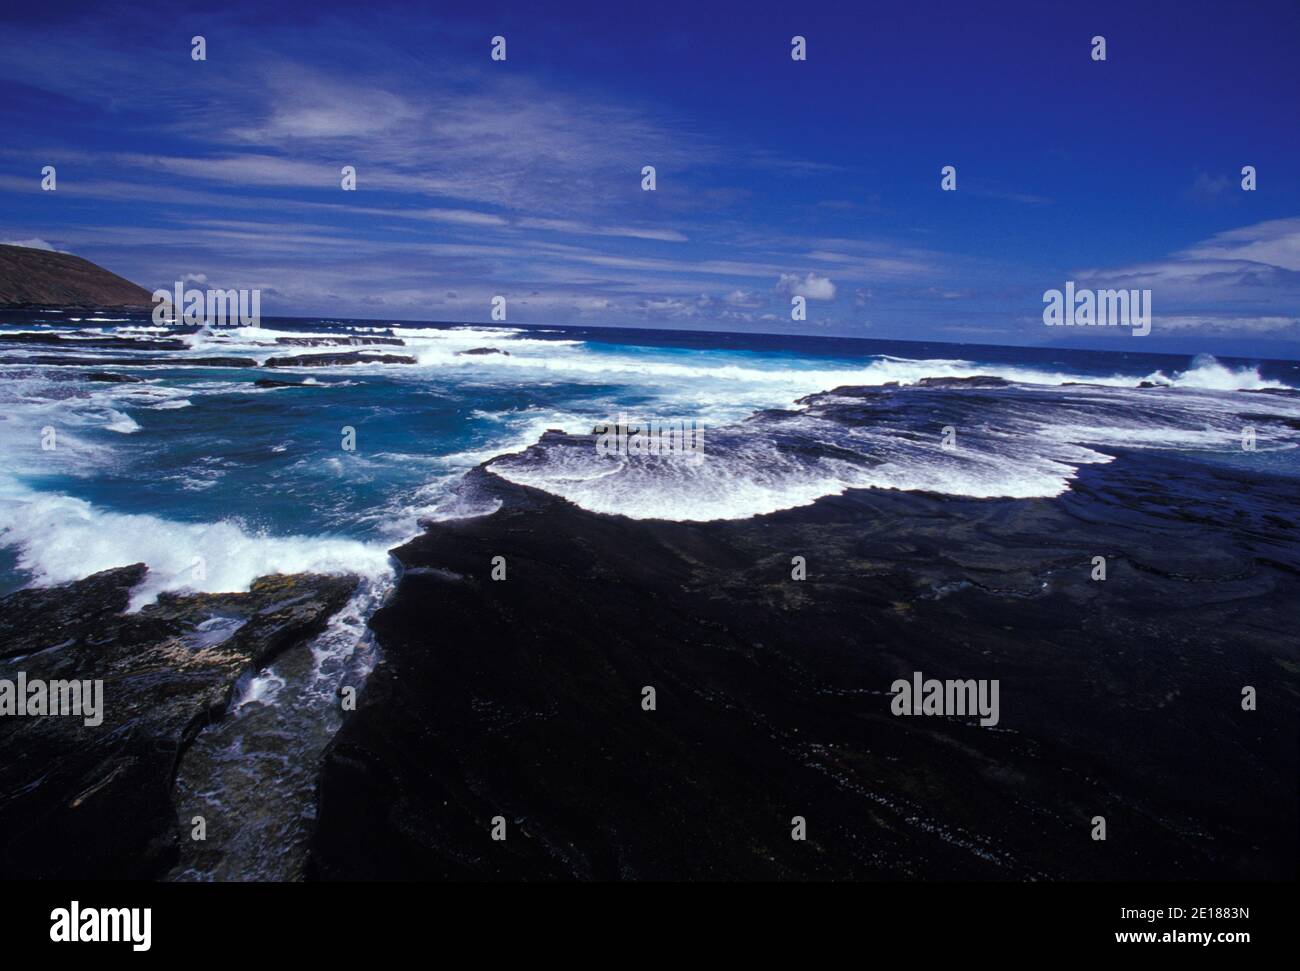 La costa di Niihau. Costa naturale incontaminata, barriere coralline e acque cristalline. Foto Stock